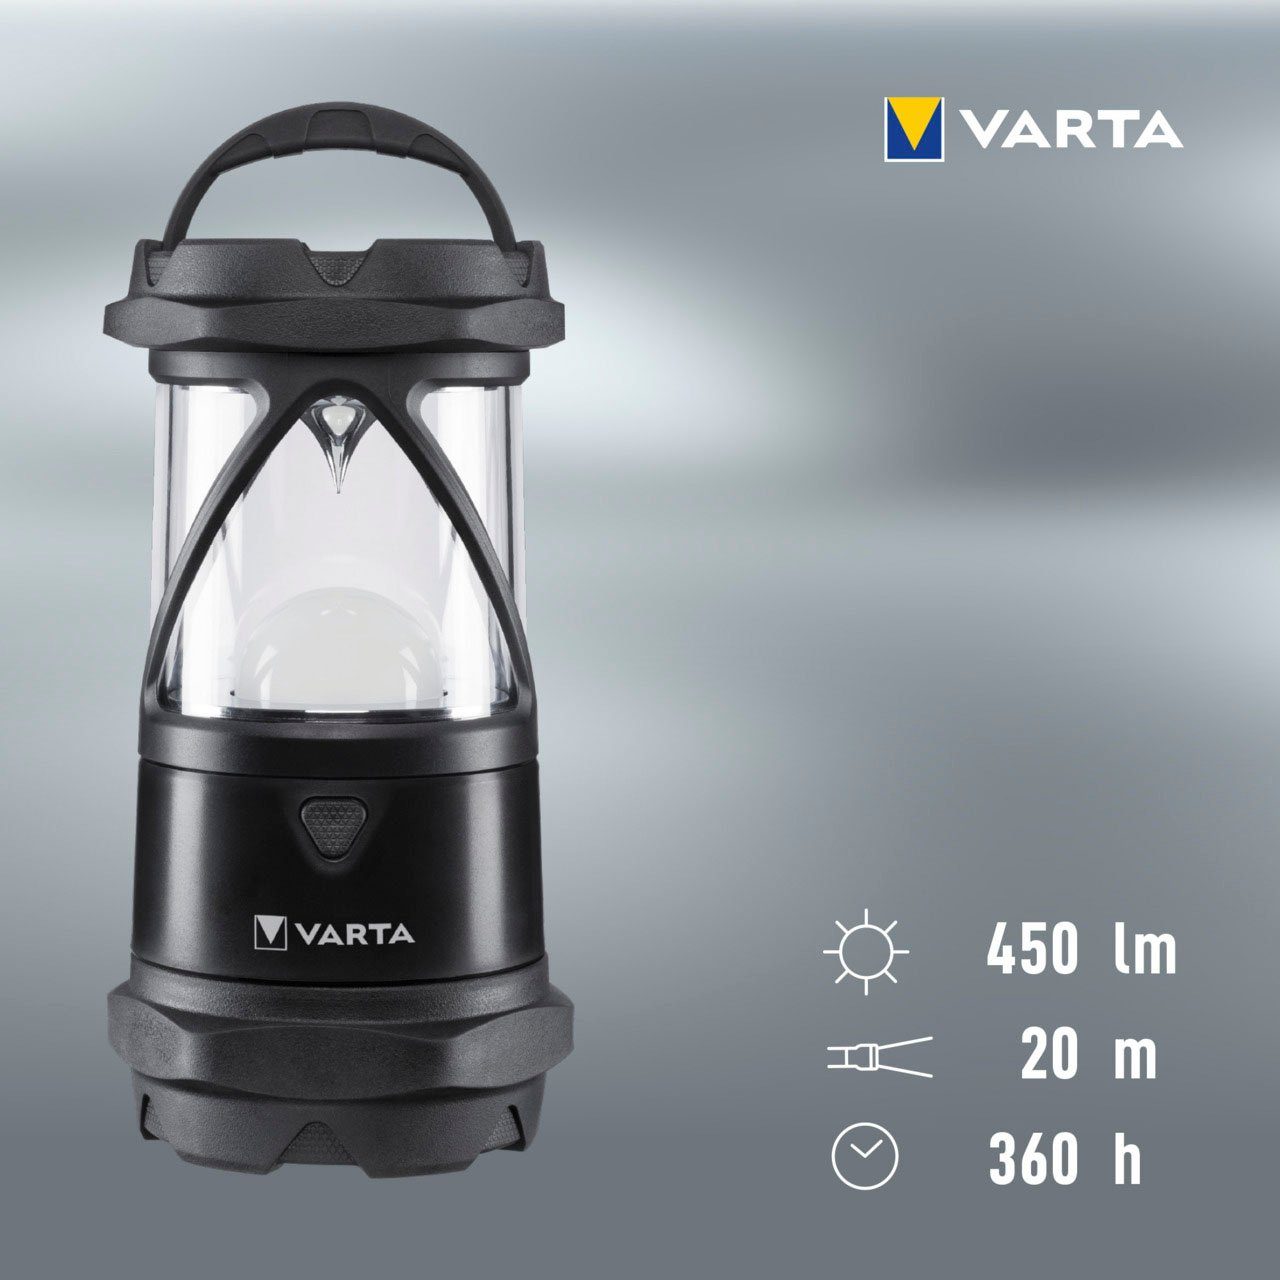 Laterne VARTA wasser- Indestructible Linse und COB Reflektor Pro staubdicht,stoßabsorbierend,bruchfeste und L30 LED,